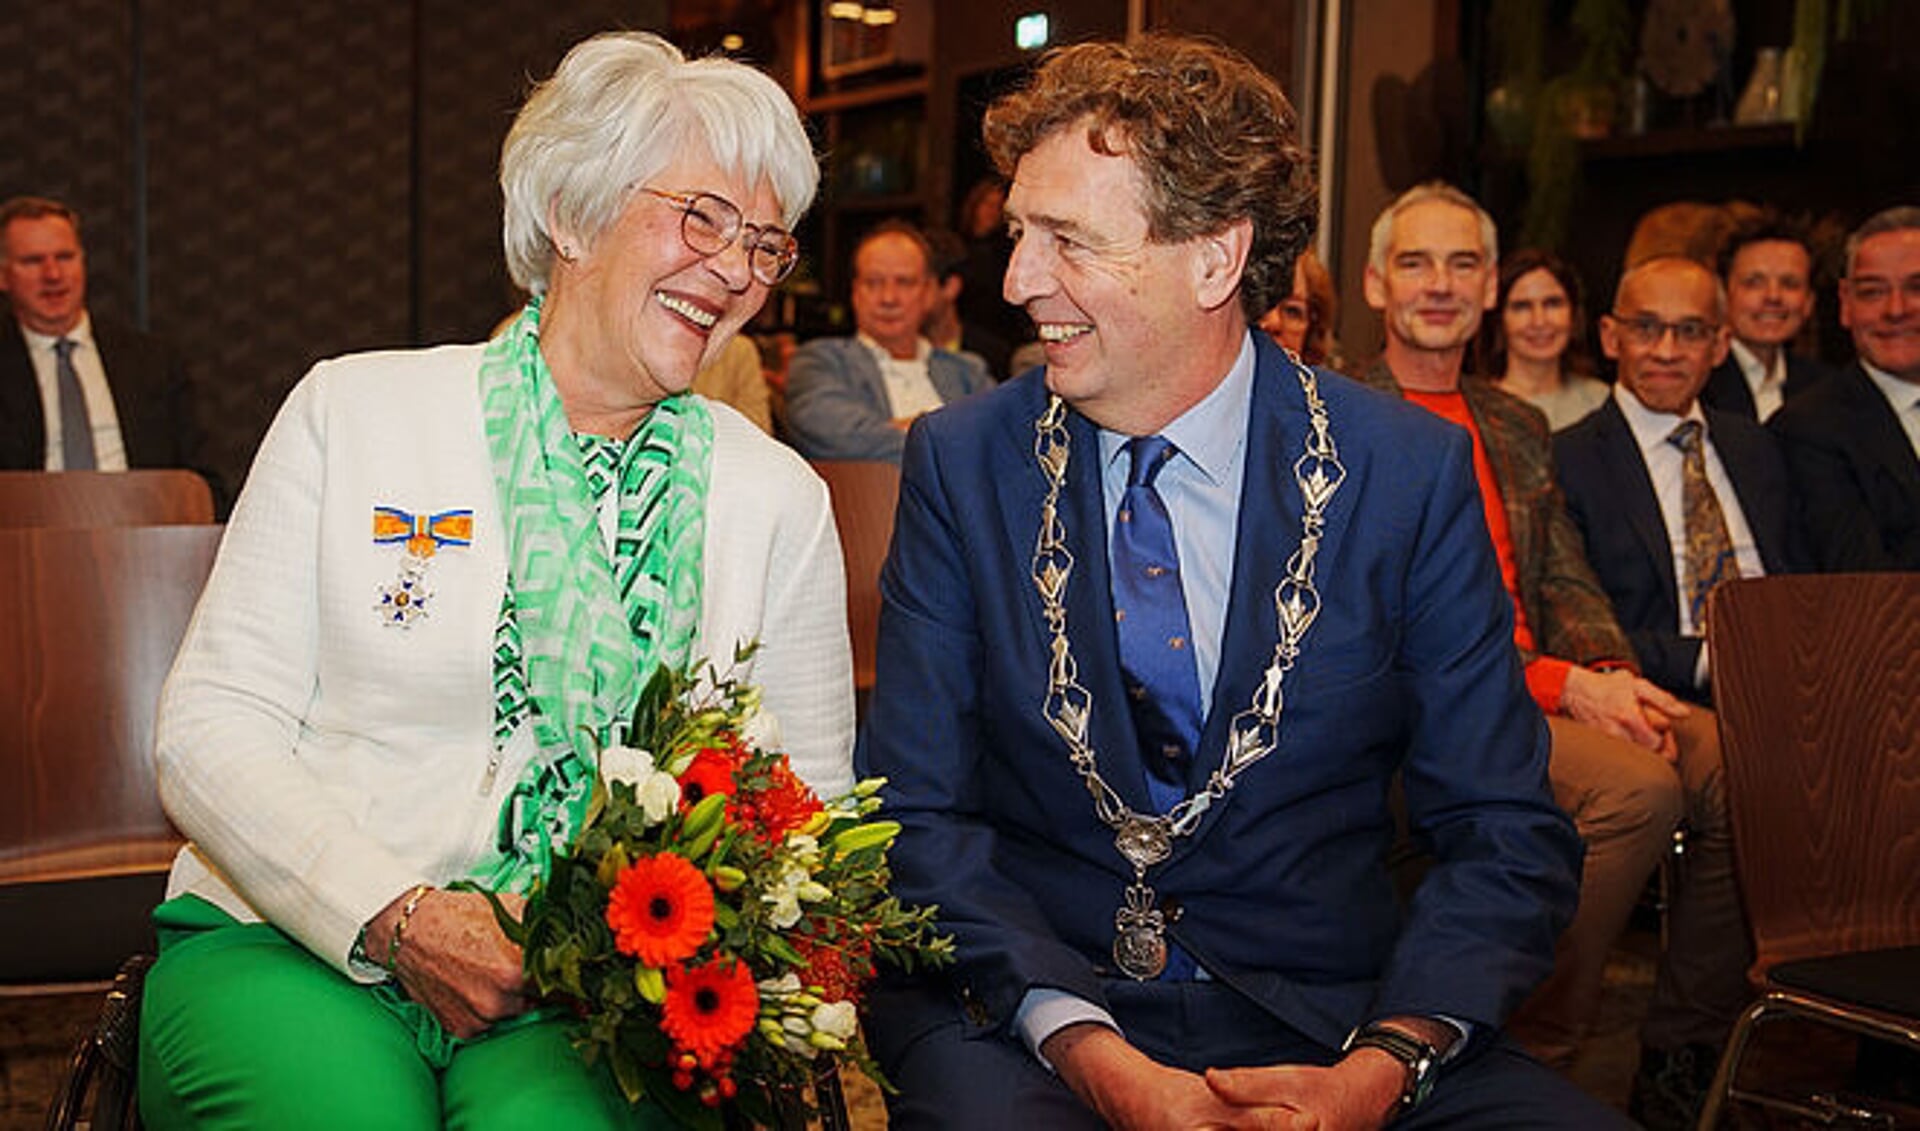 Jessica Laumen-de Valk is benoemd tot Ridder in de Orde van Oranje-Nassau